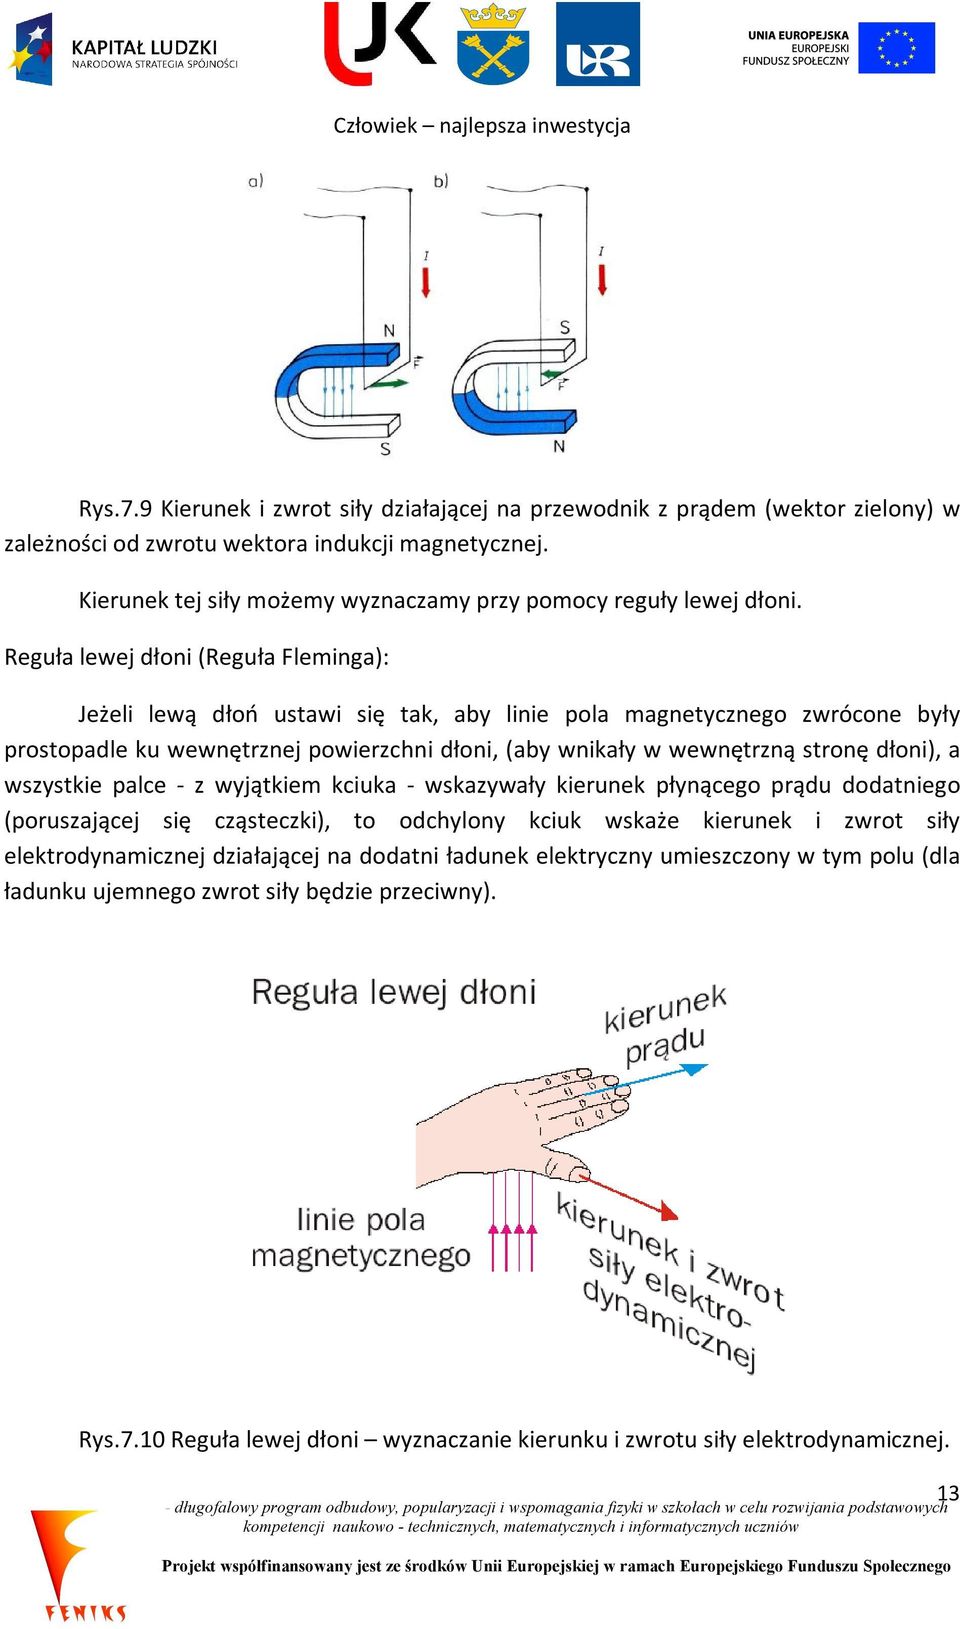 Reguła lewej dłoni (Reguła Fleminga): Jeżeli lewą dłoń ustawi się tak, aby linie pola magnetycznego zwrócone były prostopadle ku wewnętrznej powierzchni dłoni, (aby wnikały w wewnętrzną stronę